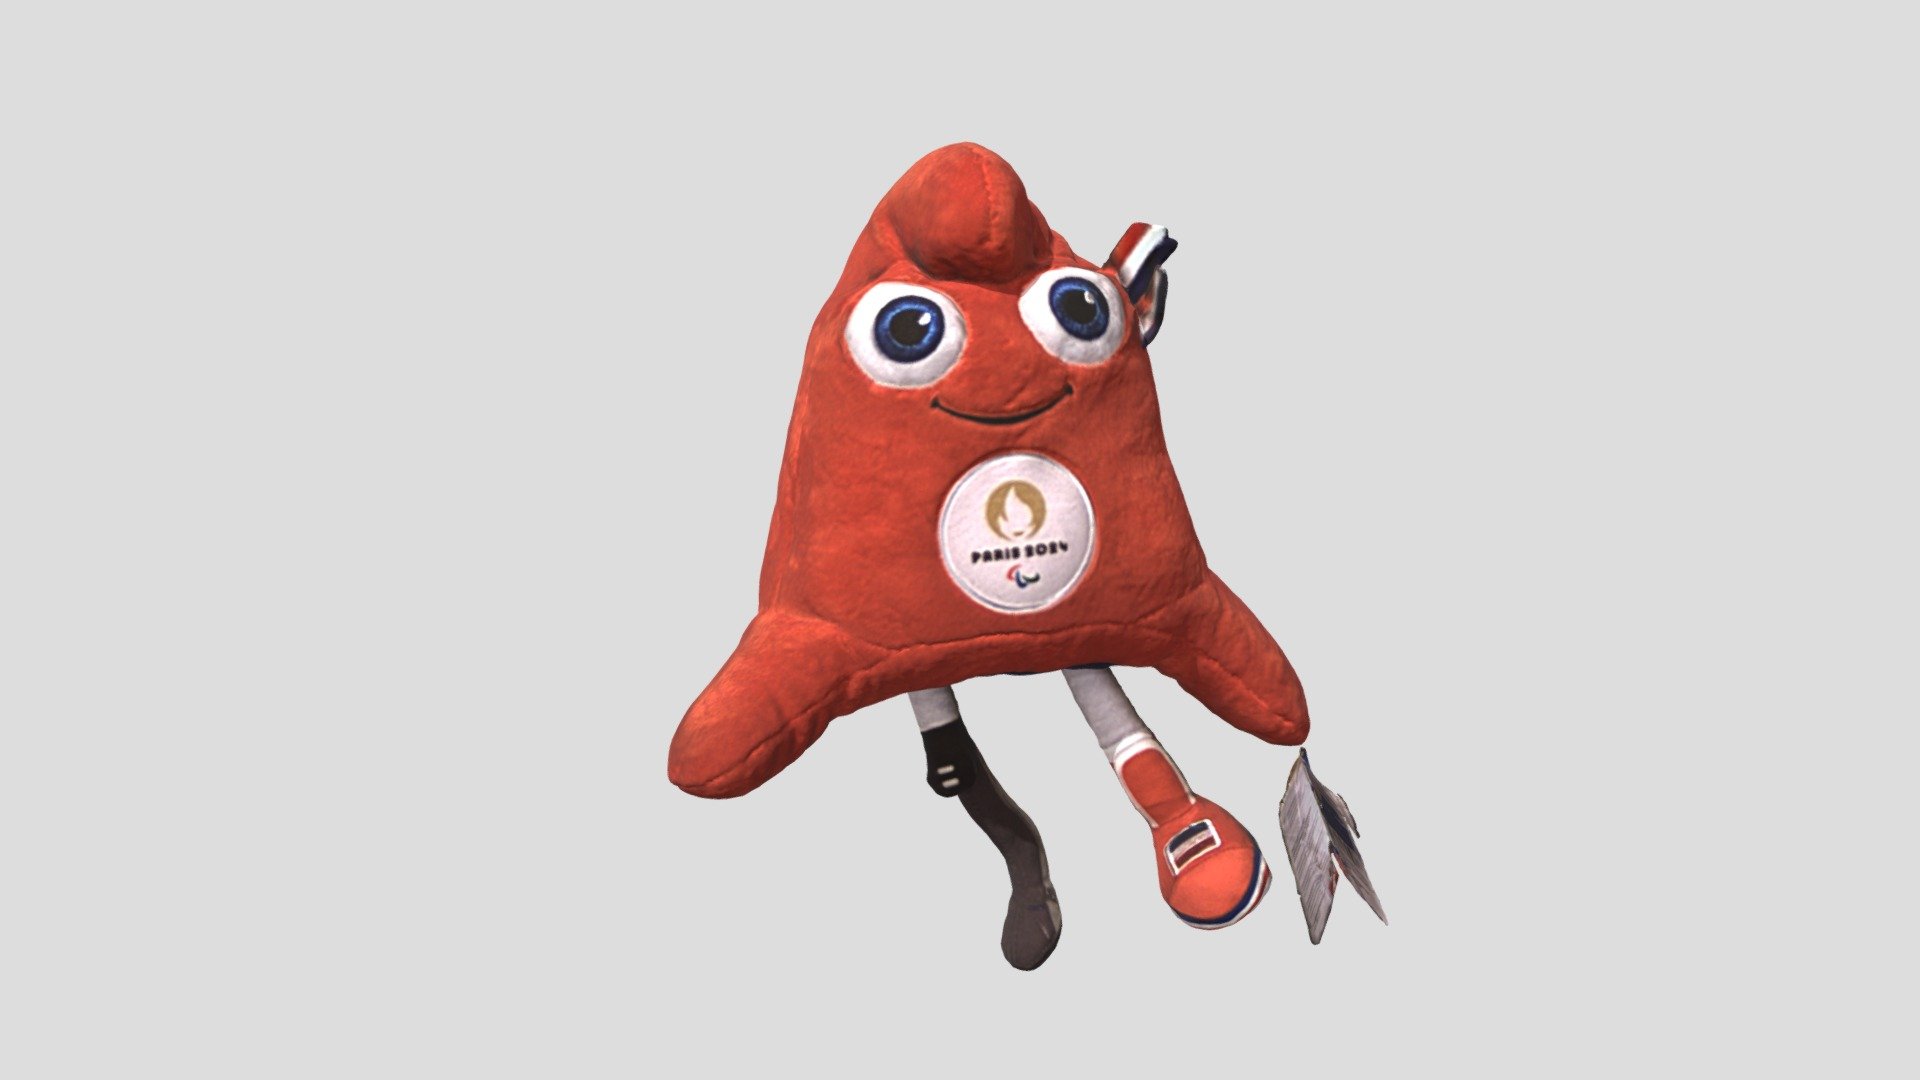 Phryge mascot, Paris 2024 Paralympics 3D model by NPHT [c243430